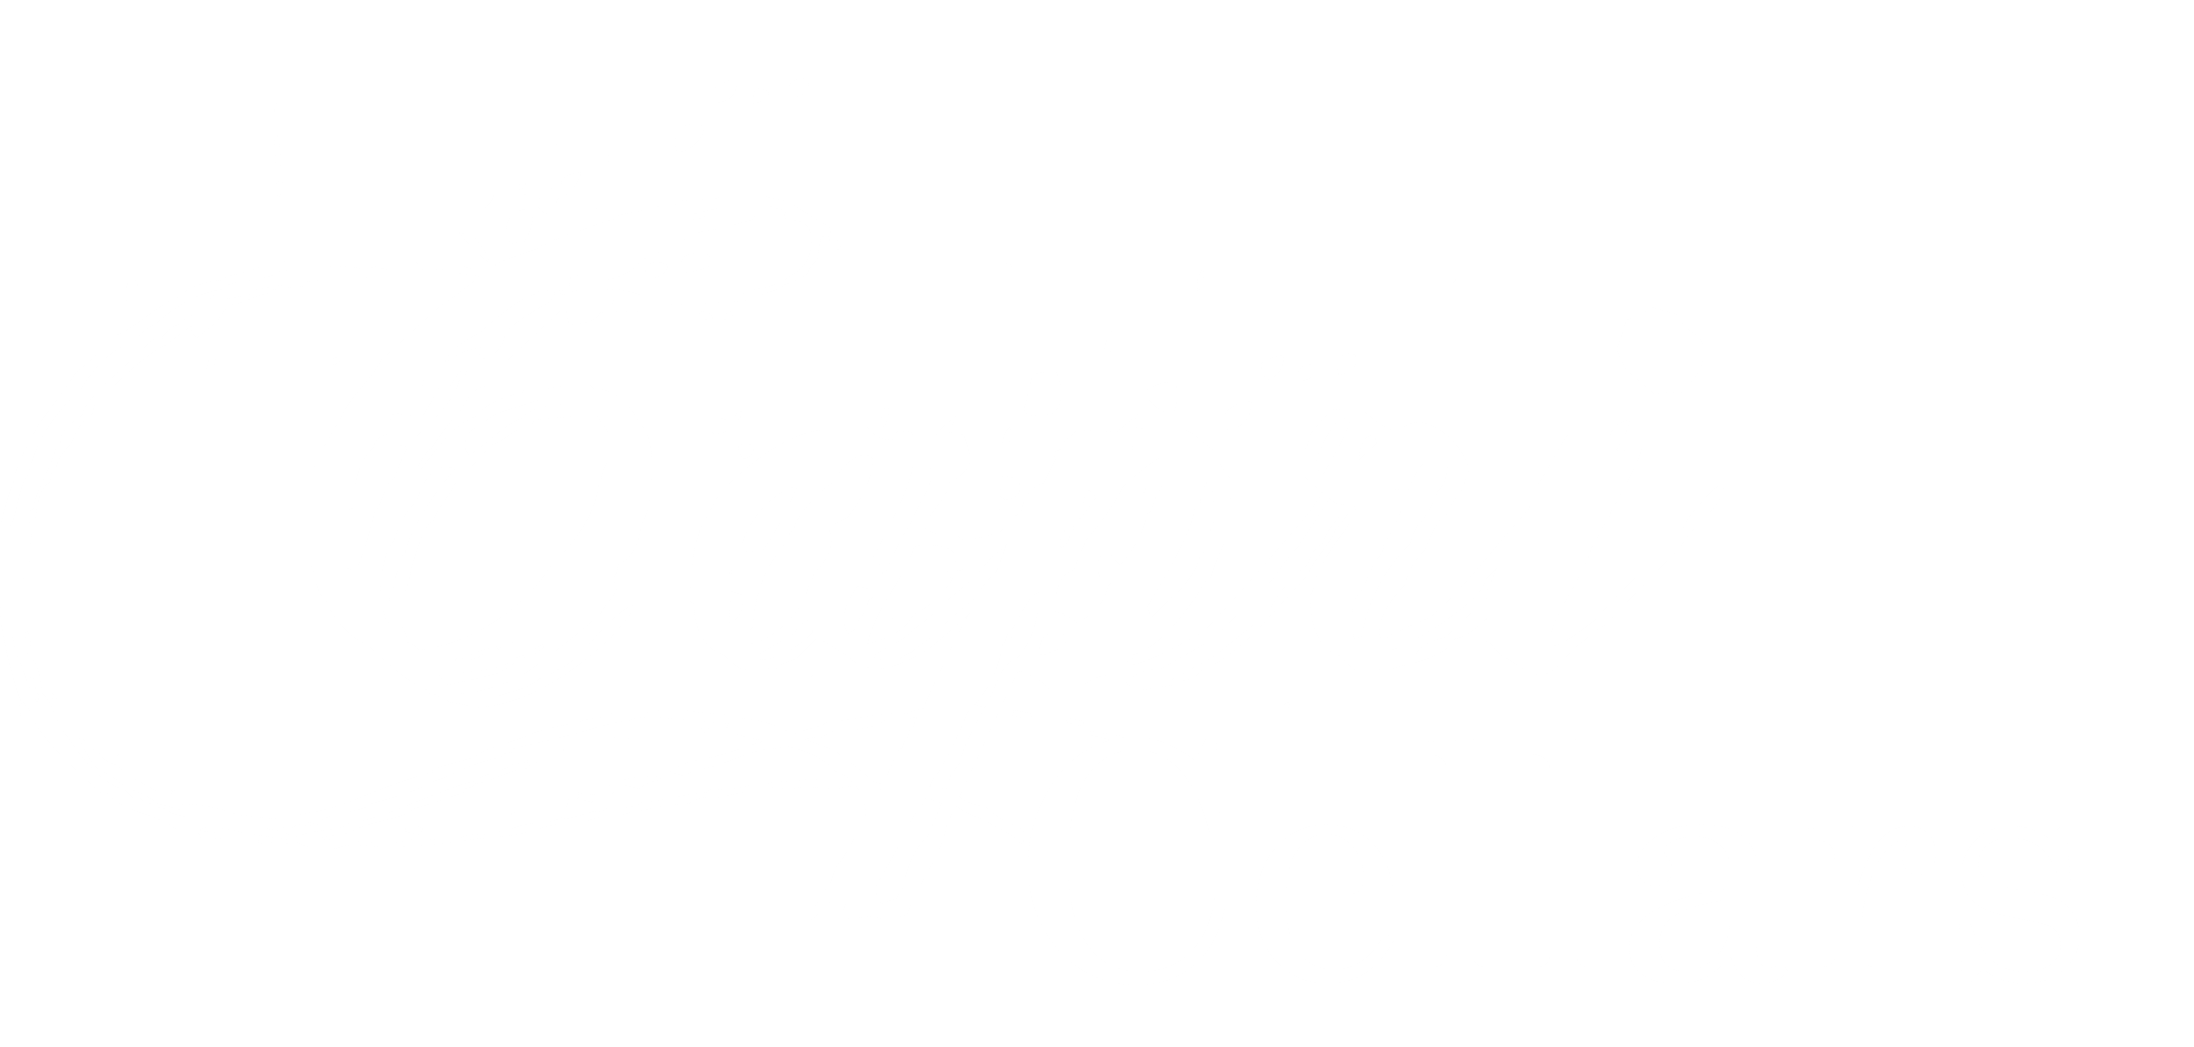 Capri Cellars